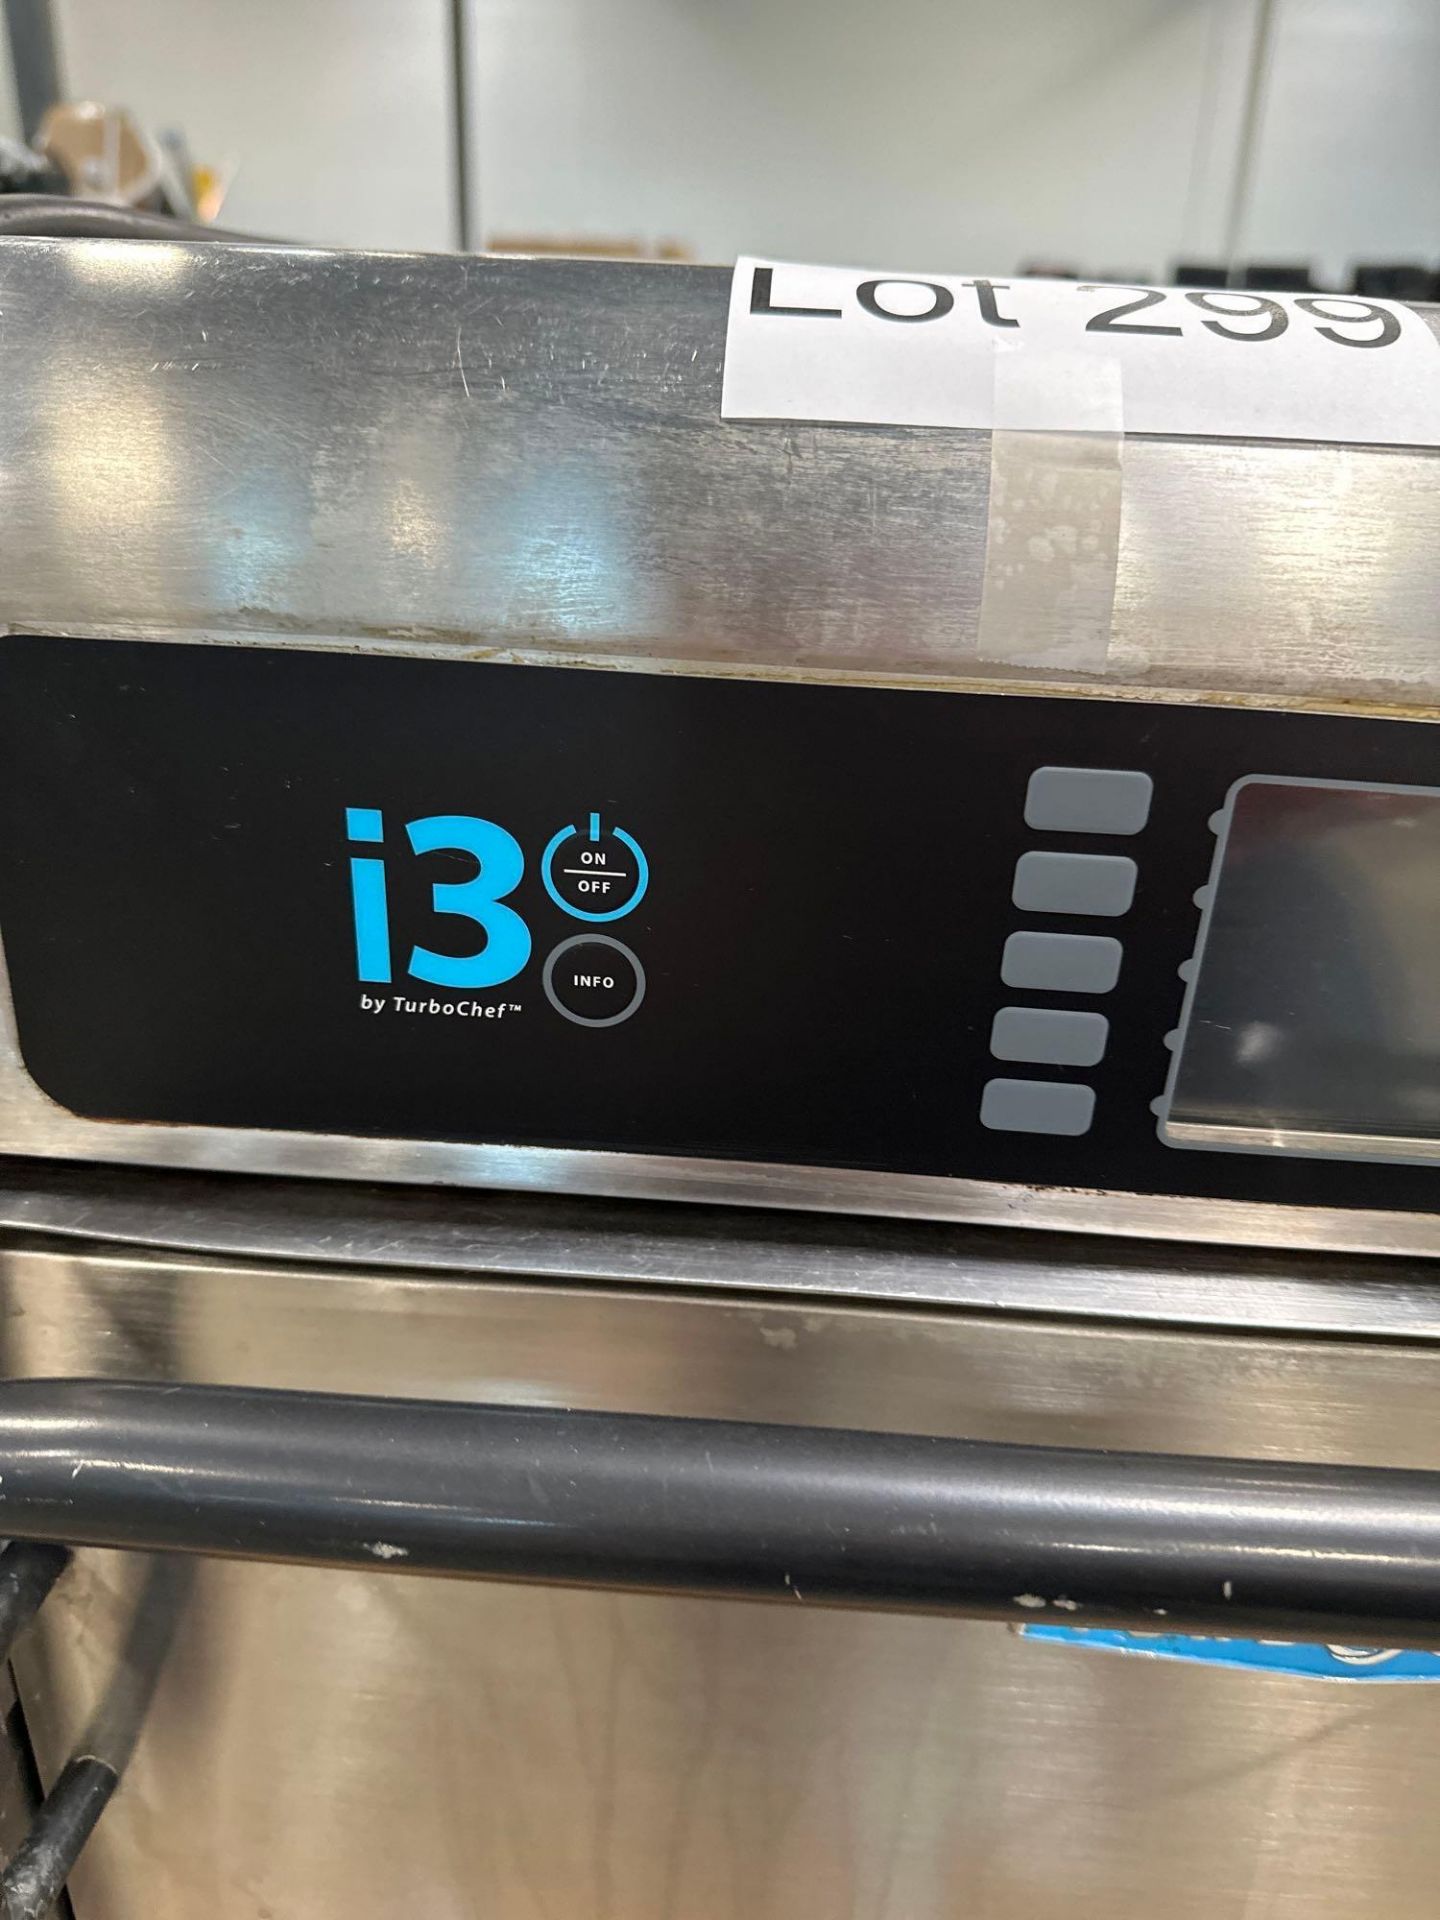 i3 TurboChef oven - Image 2 of 4